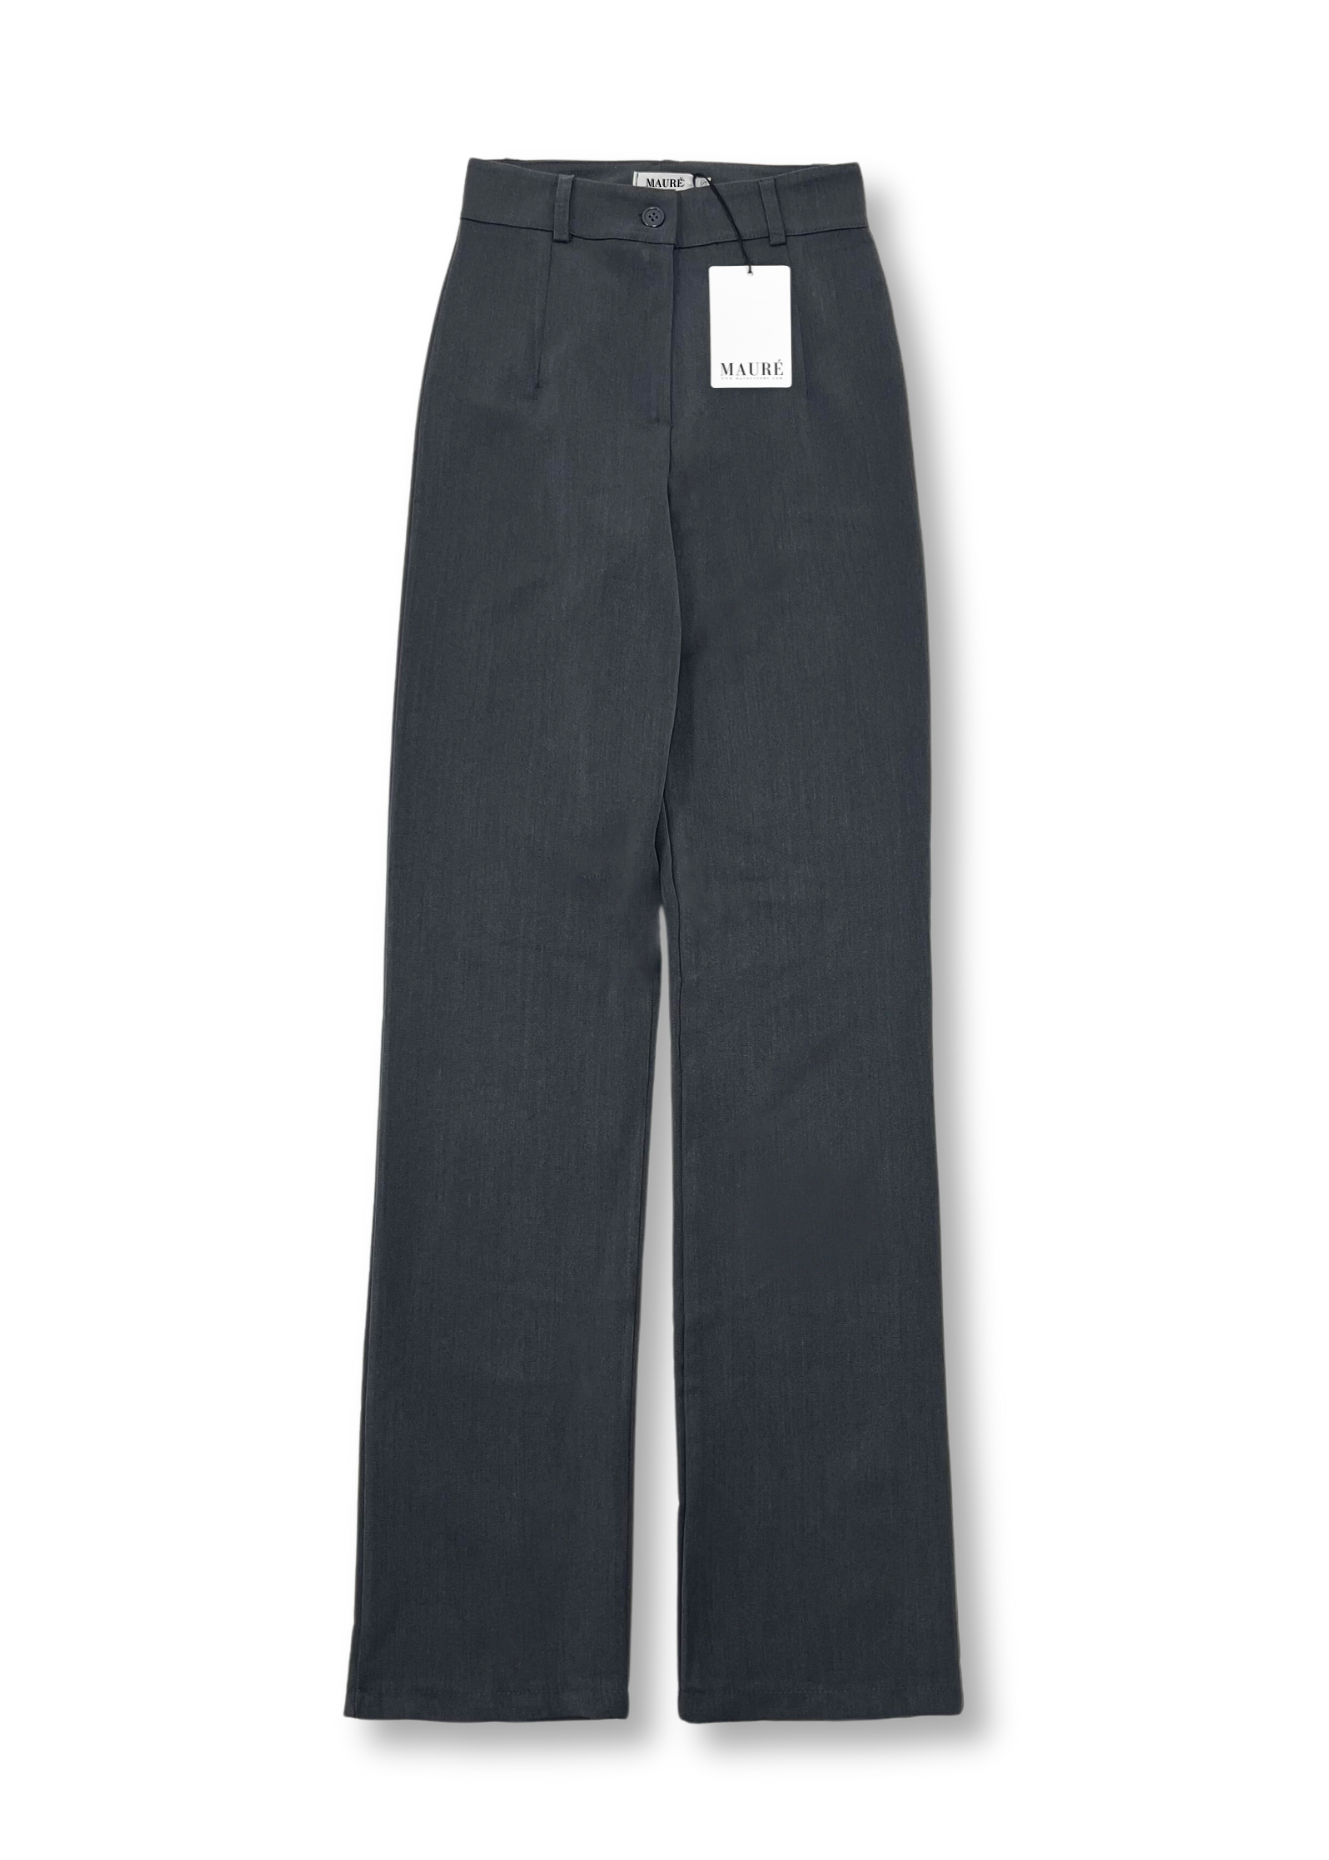 Pantalon droit classique gris foncé délavé (TALL)